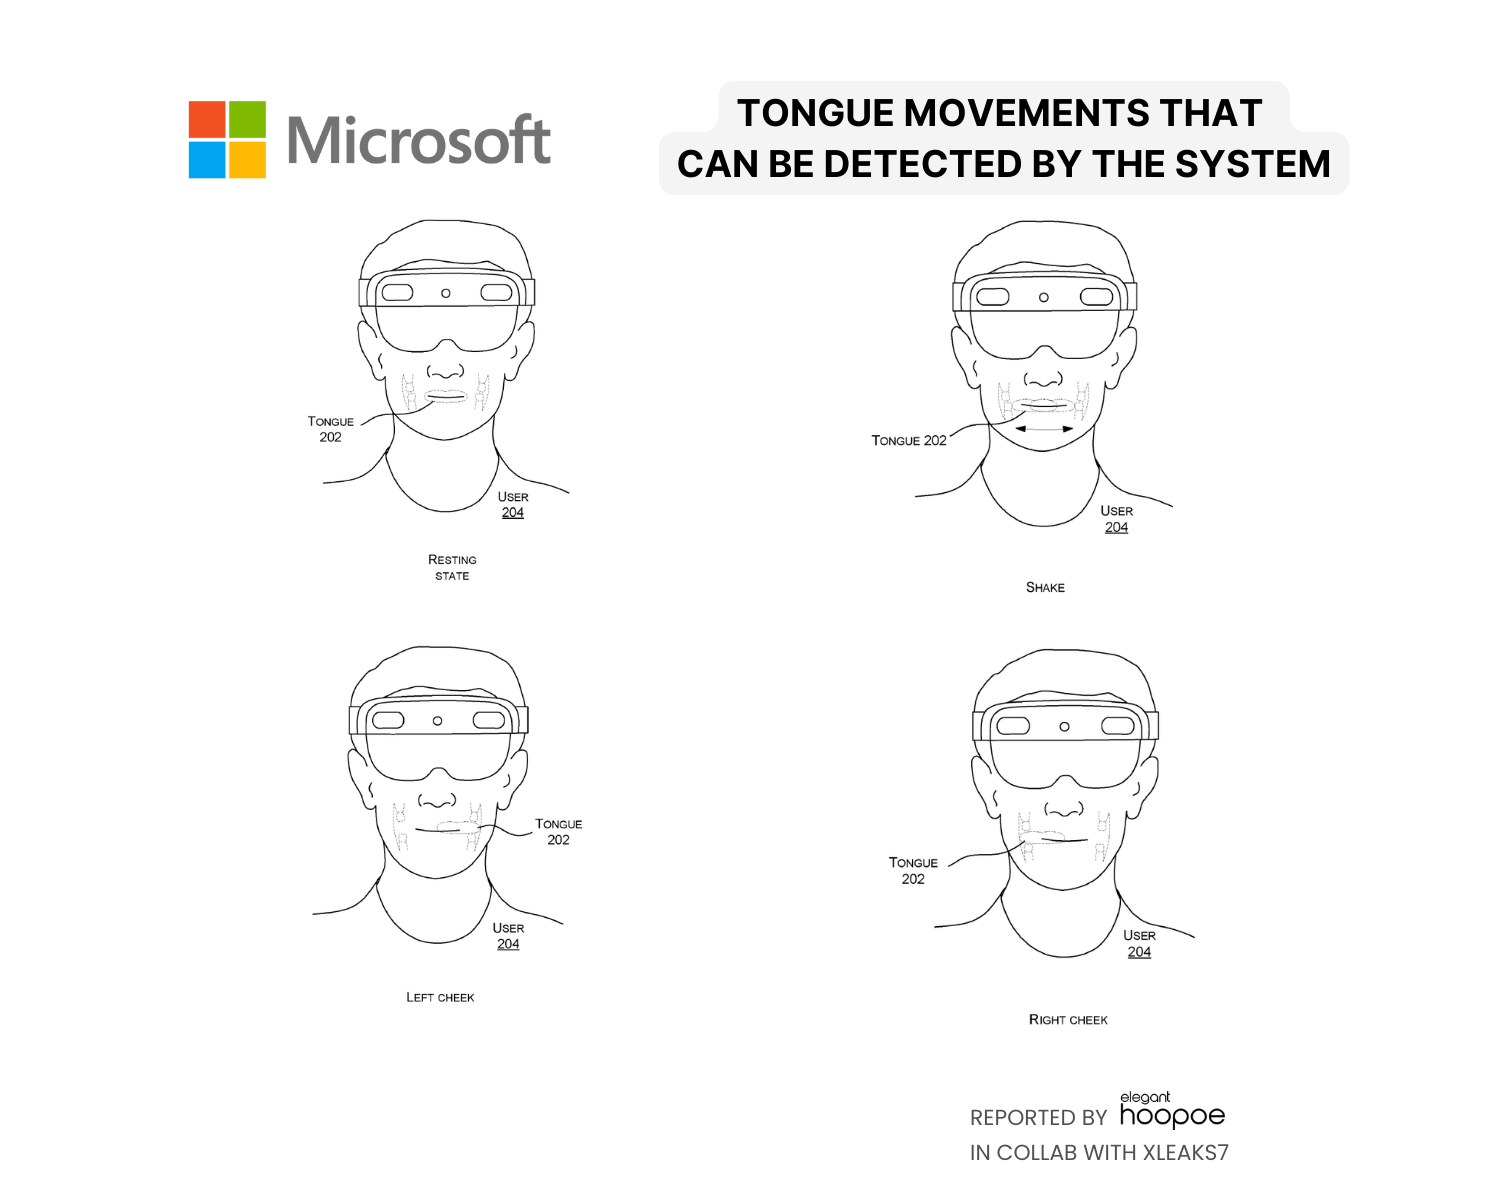 Tongue movements